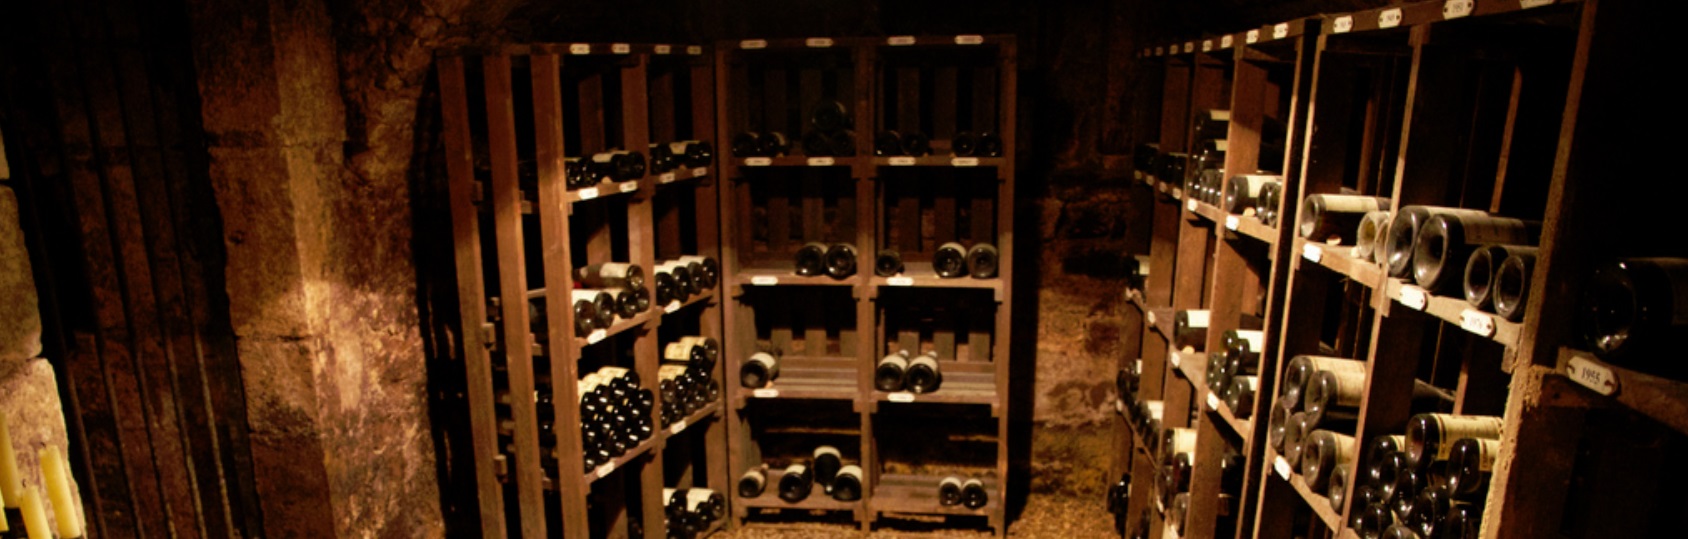 wine cellar rack, shelf